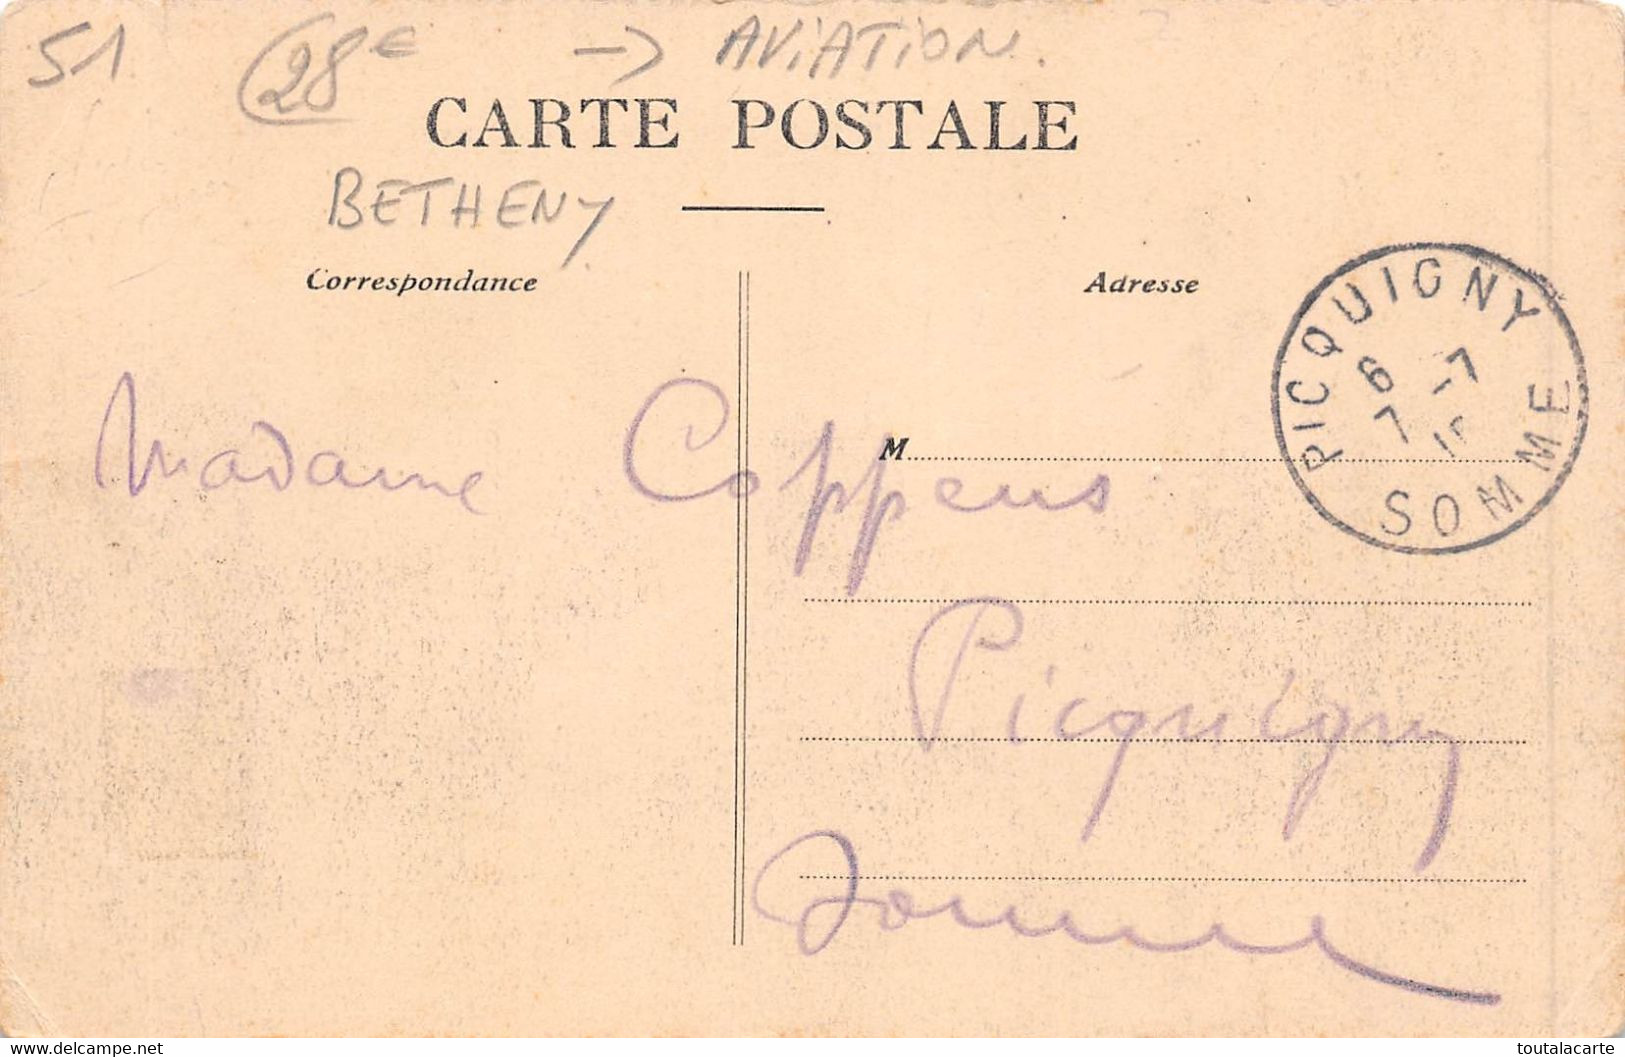 CPA BETHENY DEUXIEME GRANDE SEMAINE D AVIATION DE CHAMPAGNE DEBRIS DE L APPAREIL DE WACHTER 3 JUILLET 1910 - Ongevalen